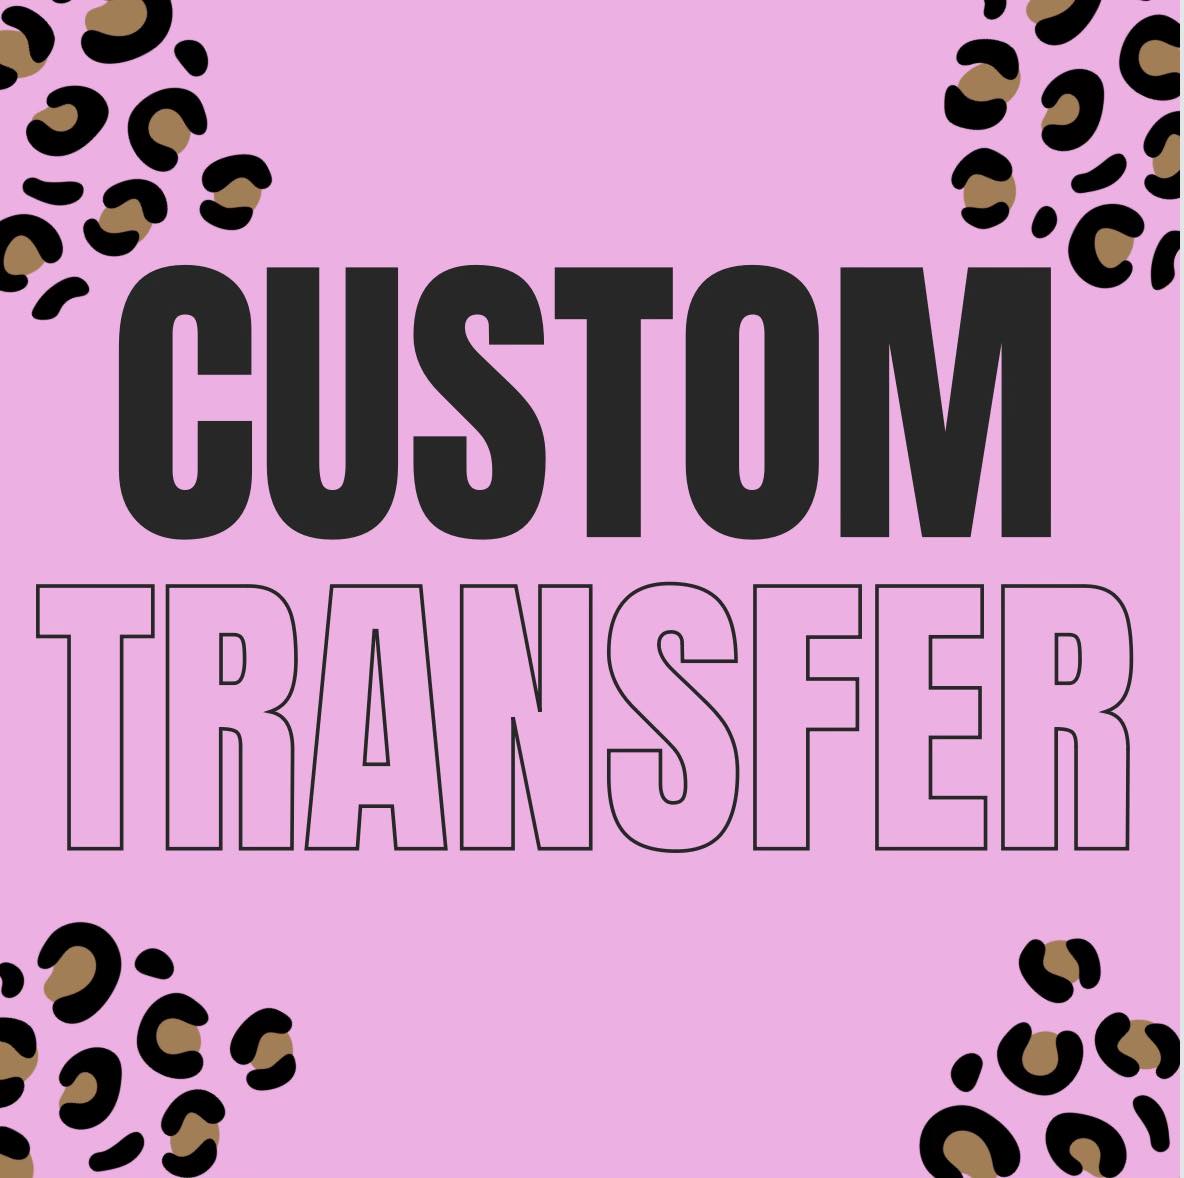 *Custom Transfer*